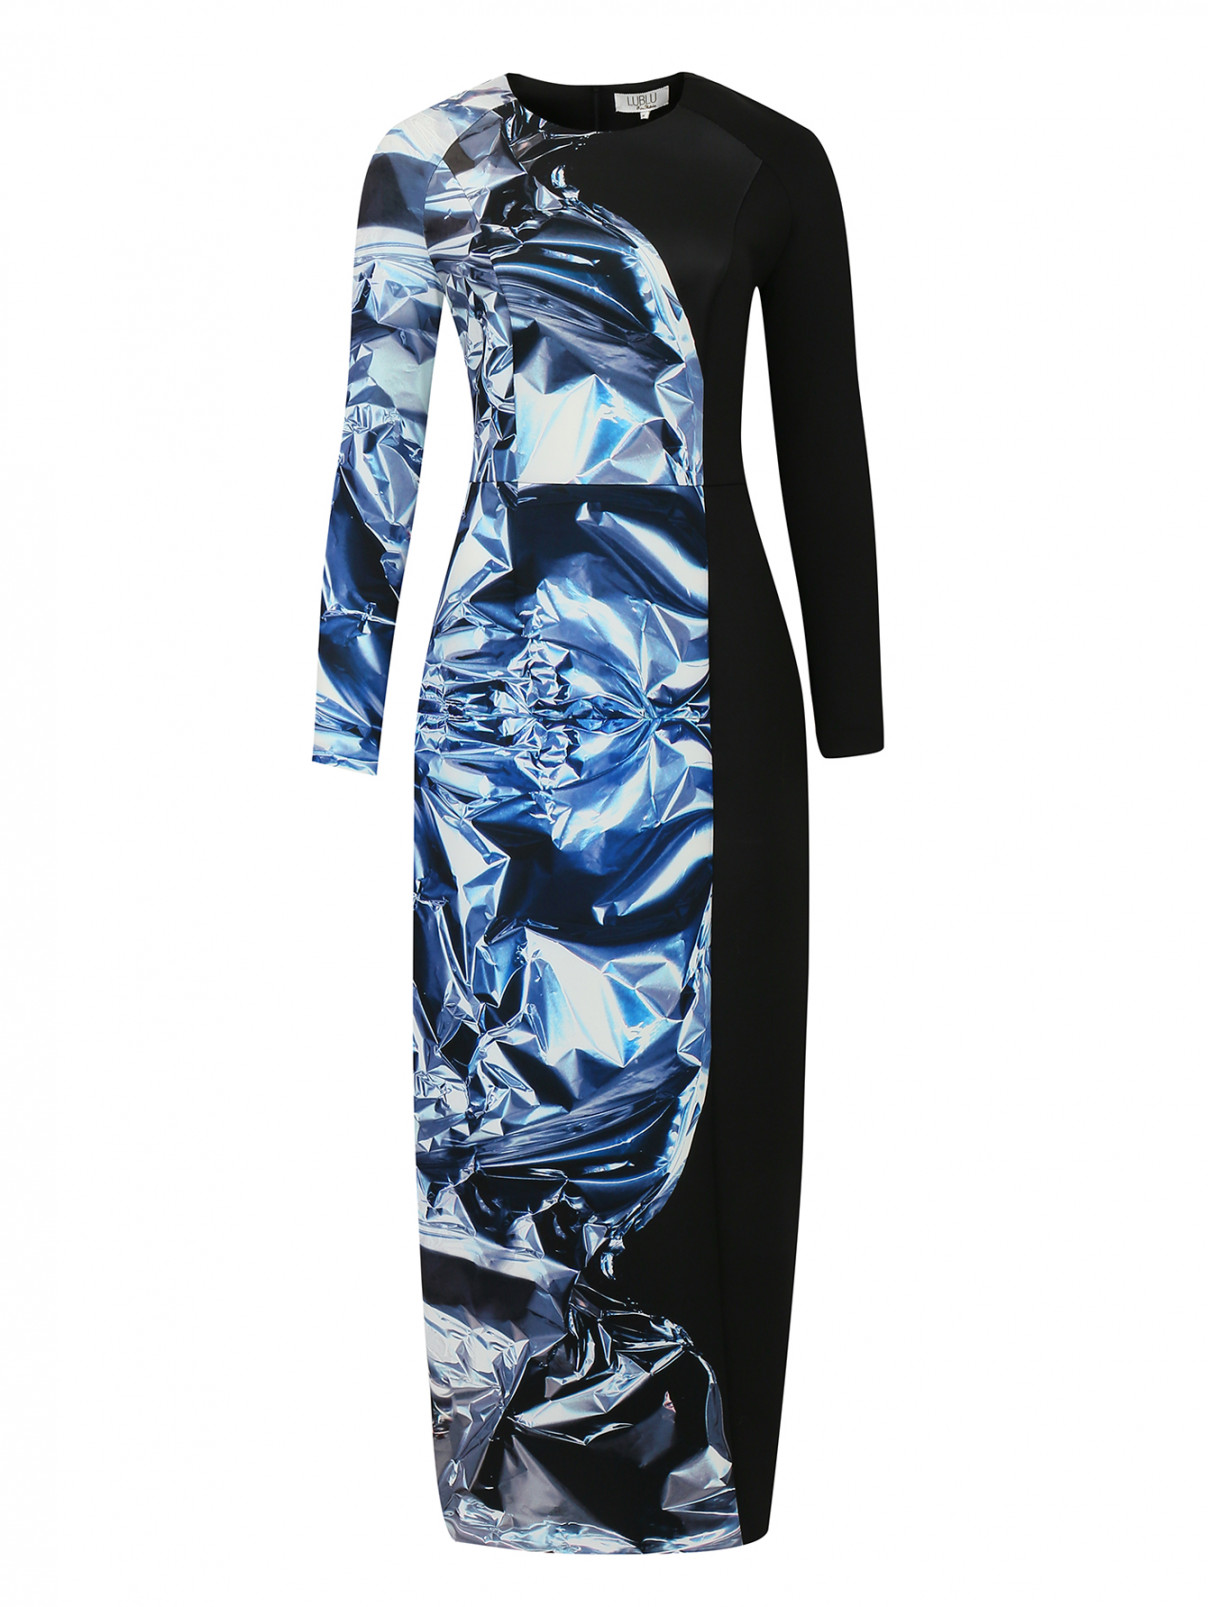 Платье-макси с принтом Kira Plastinina  –  Общий вид  – Цвет:  Черный